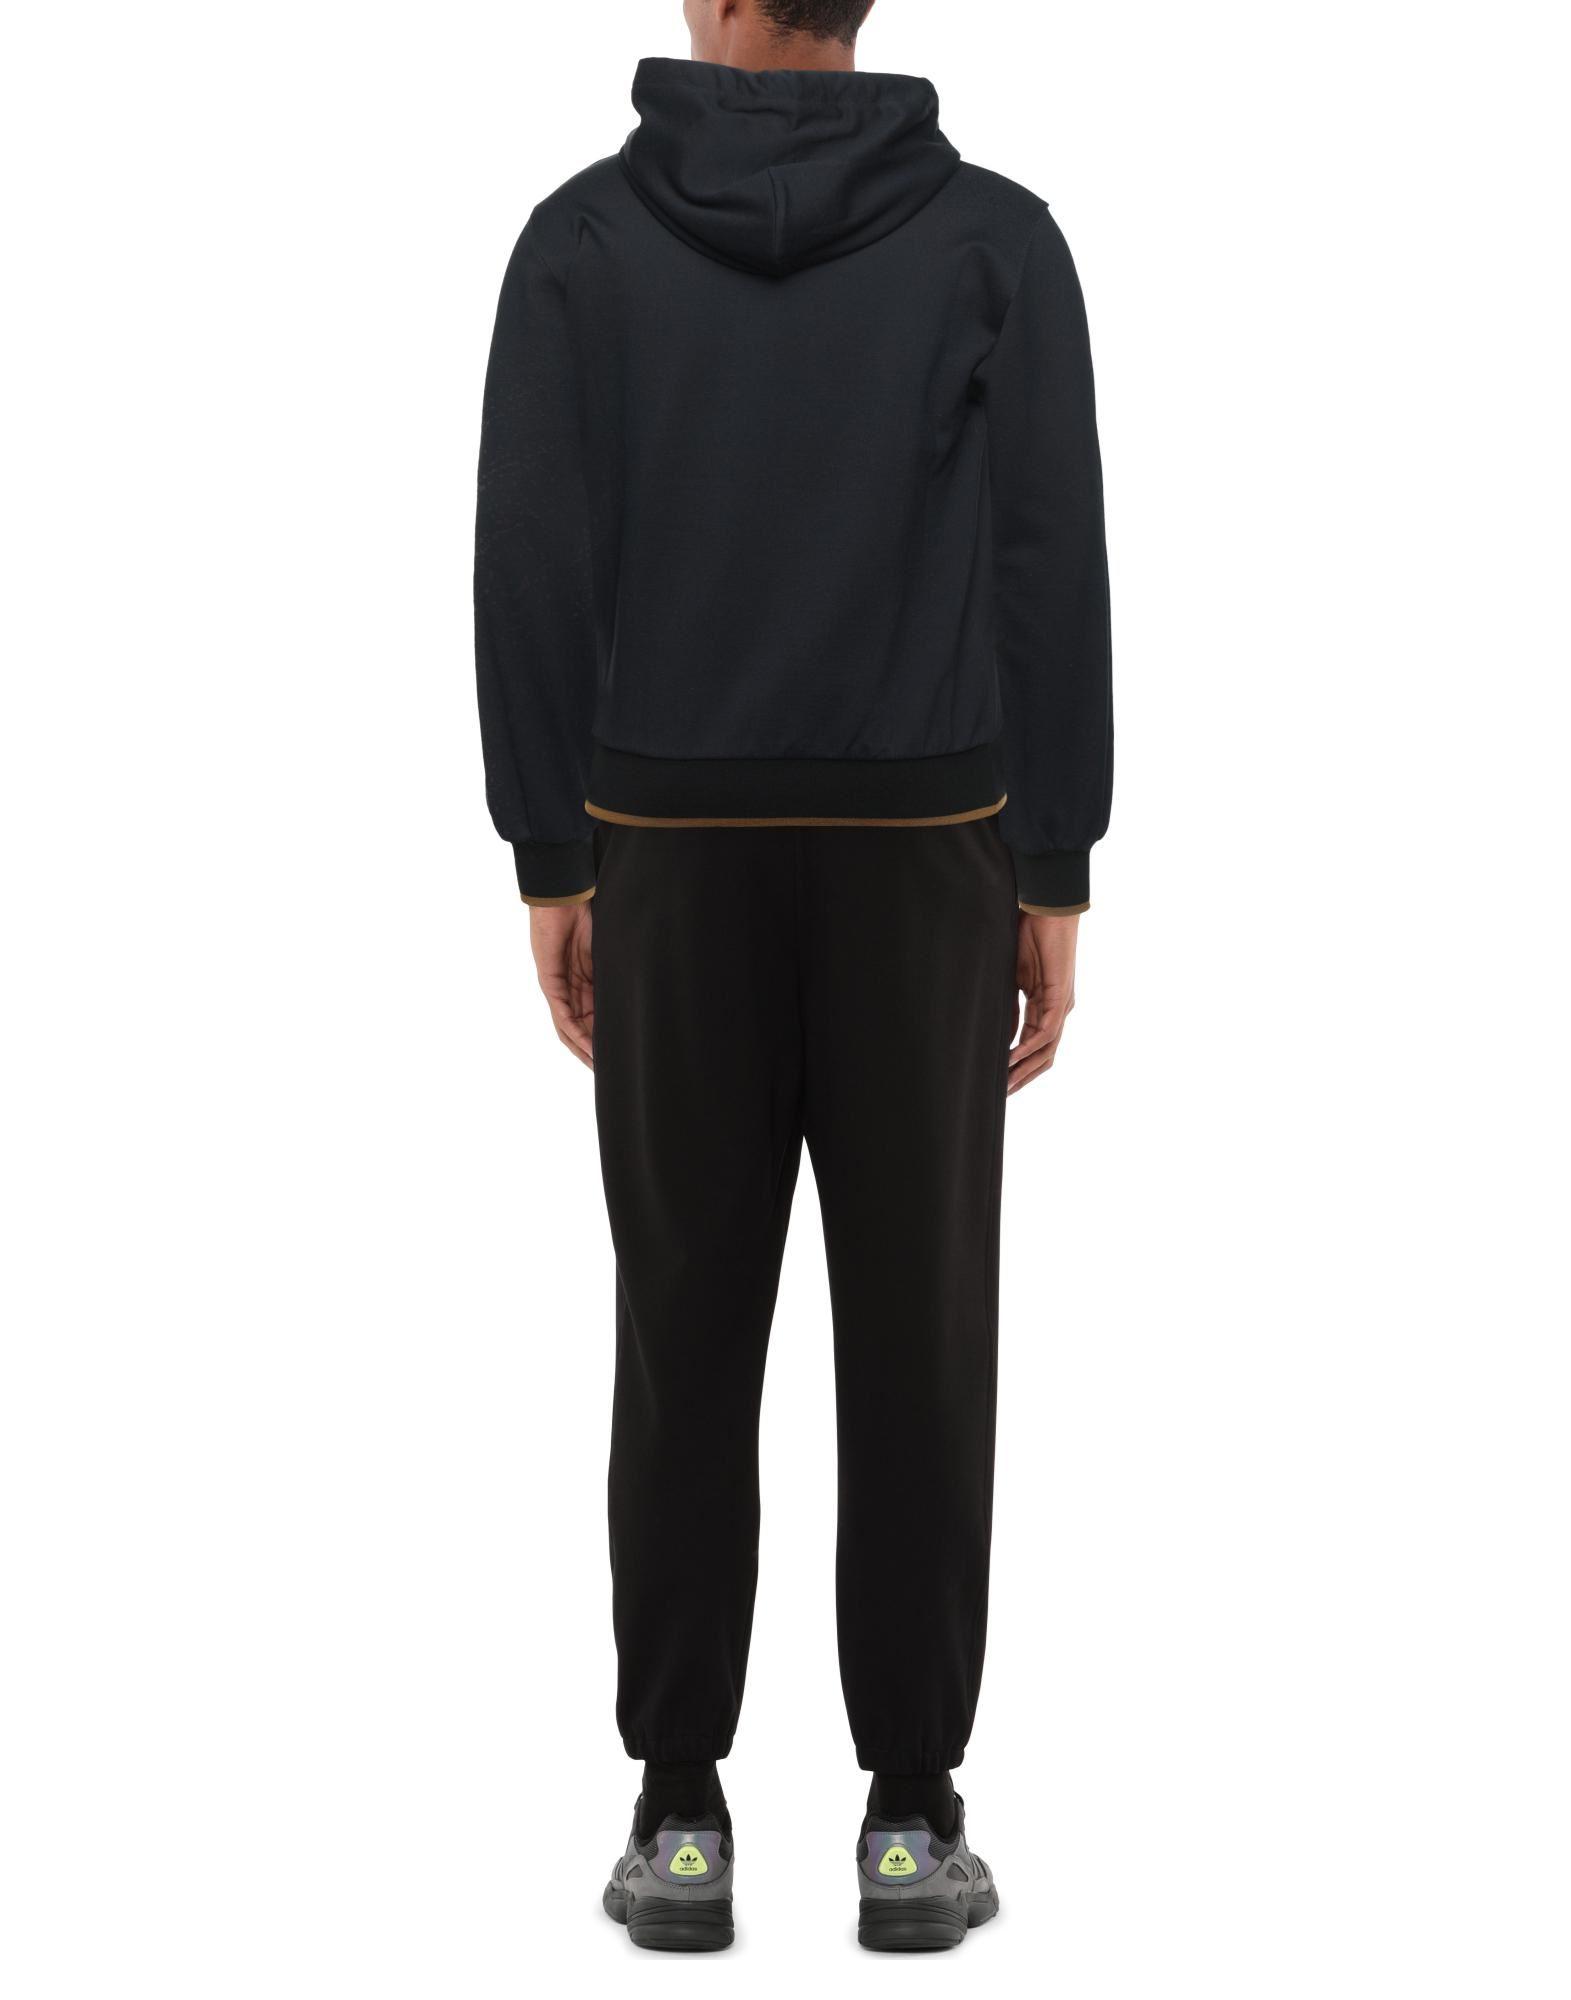 Dolce & Gabbana Synthetic Sweatshirt in Black for Men - Lyst